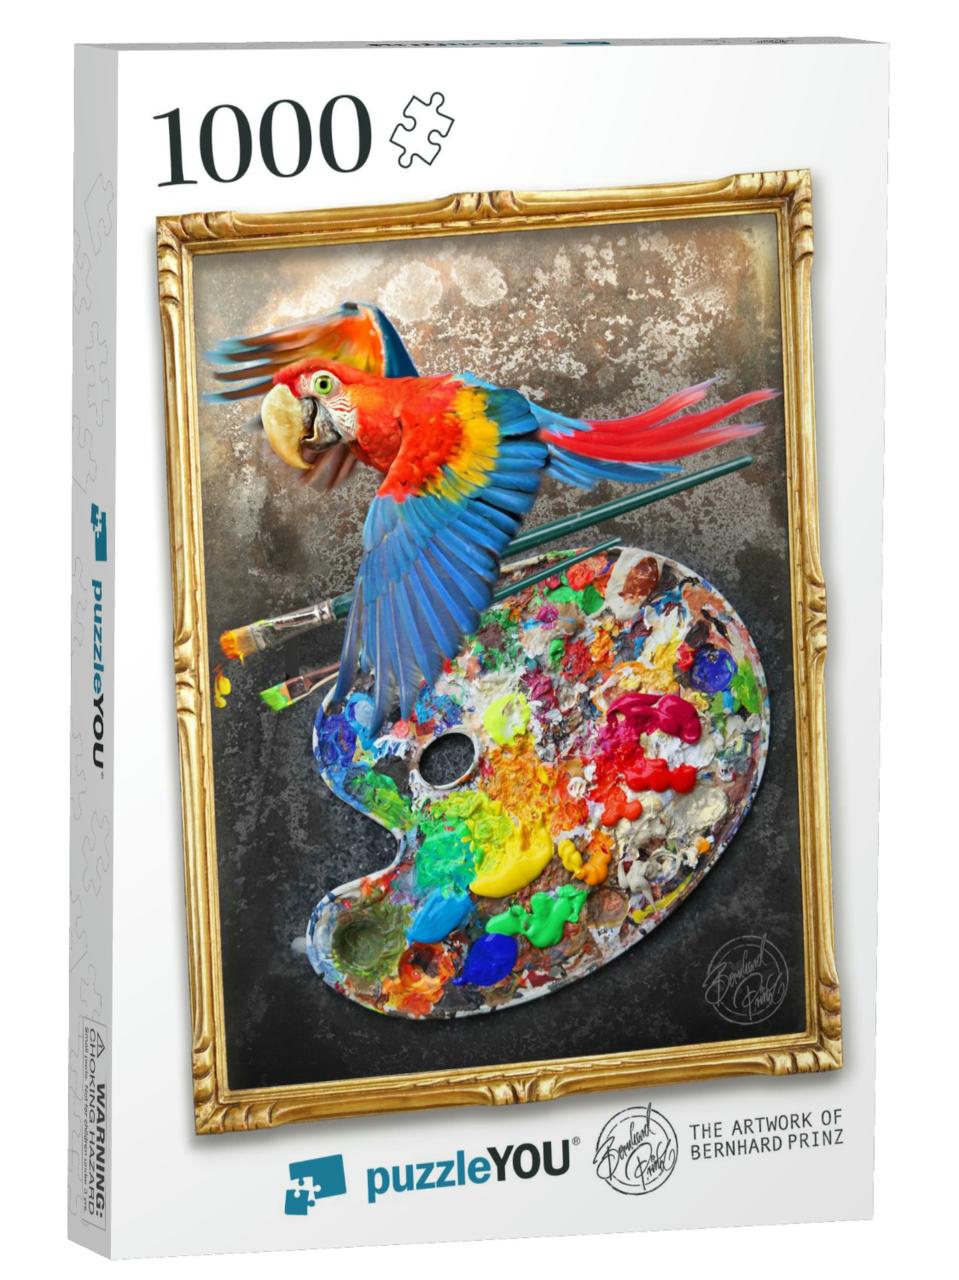 Parrot Paint Palette Jigsaw Puzzle with 1000 pieces